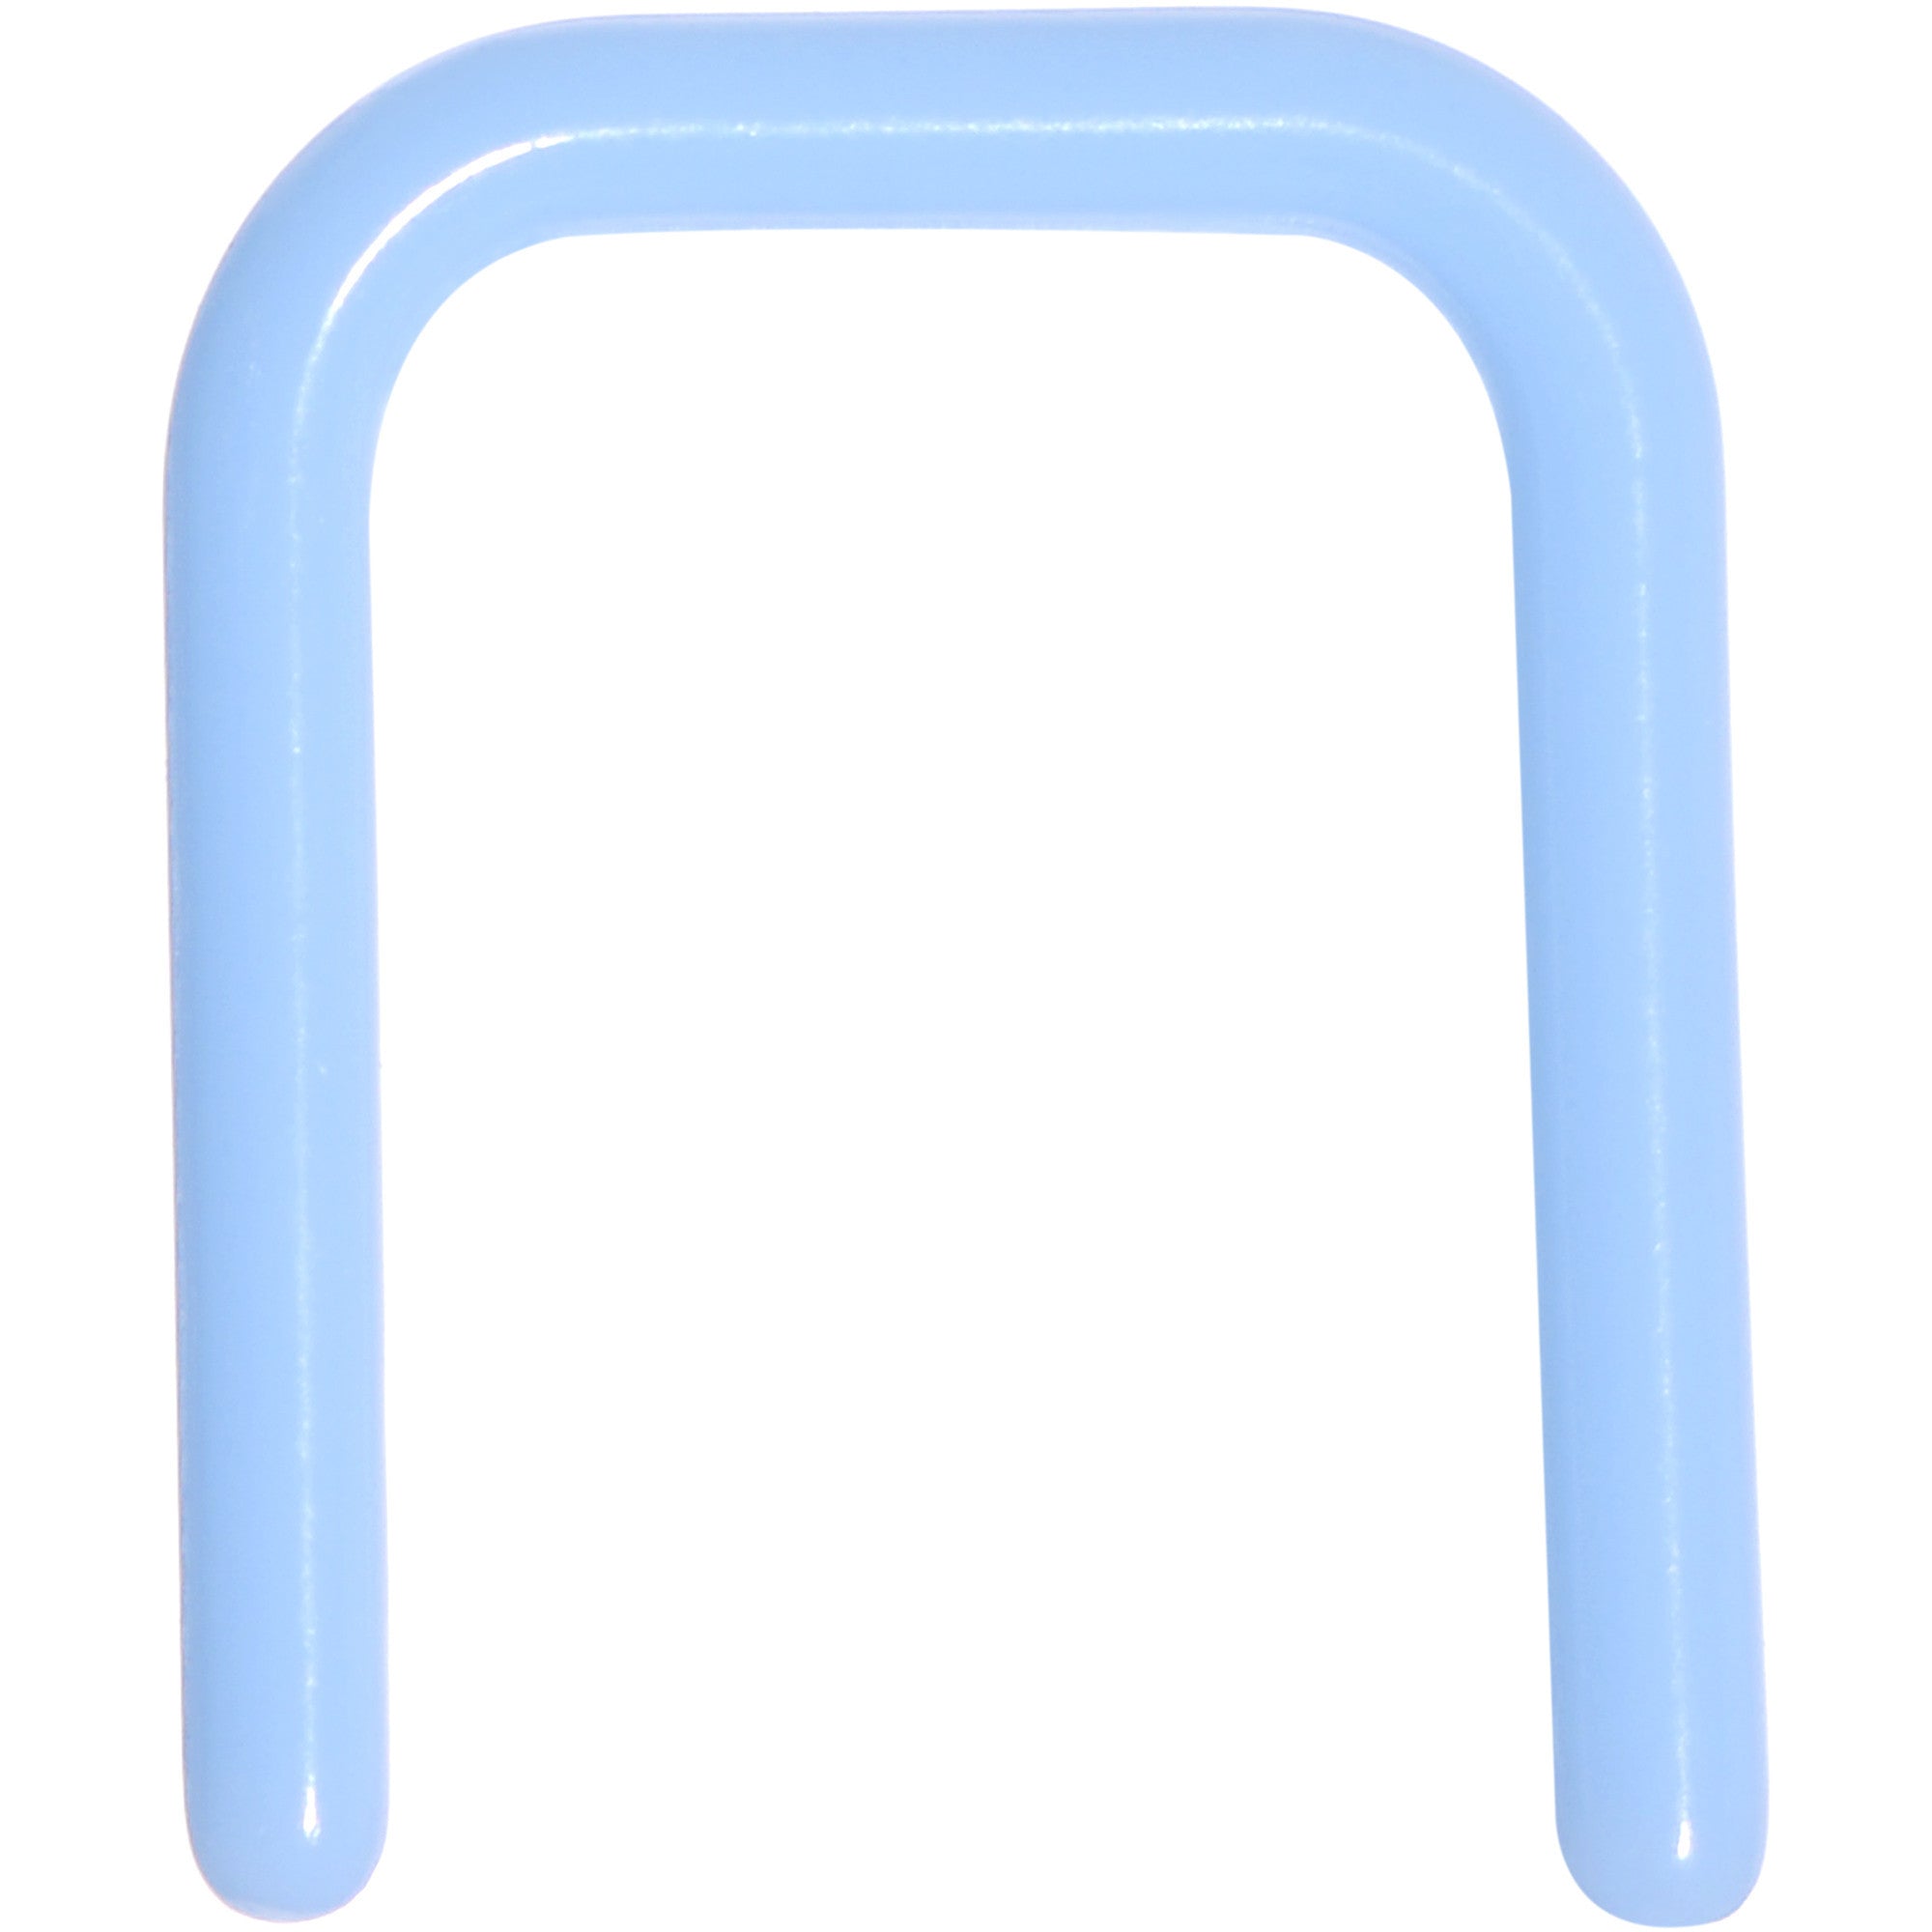 16 Gauge 5/16 Light Blue Flexible Bioplast Square Septum Retainer